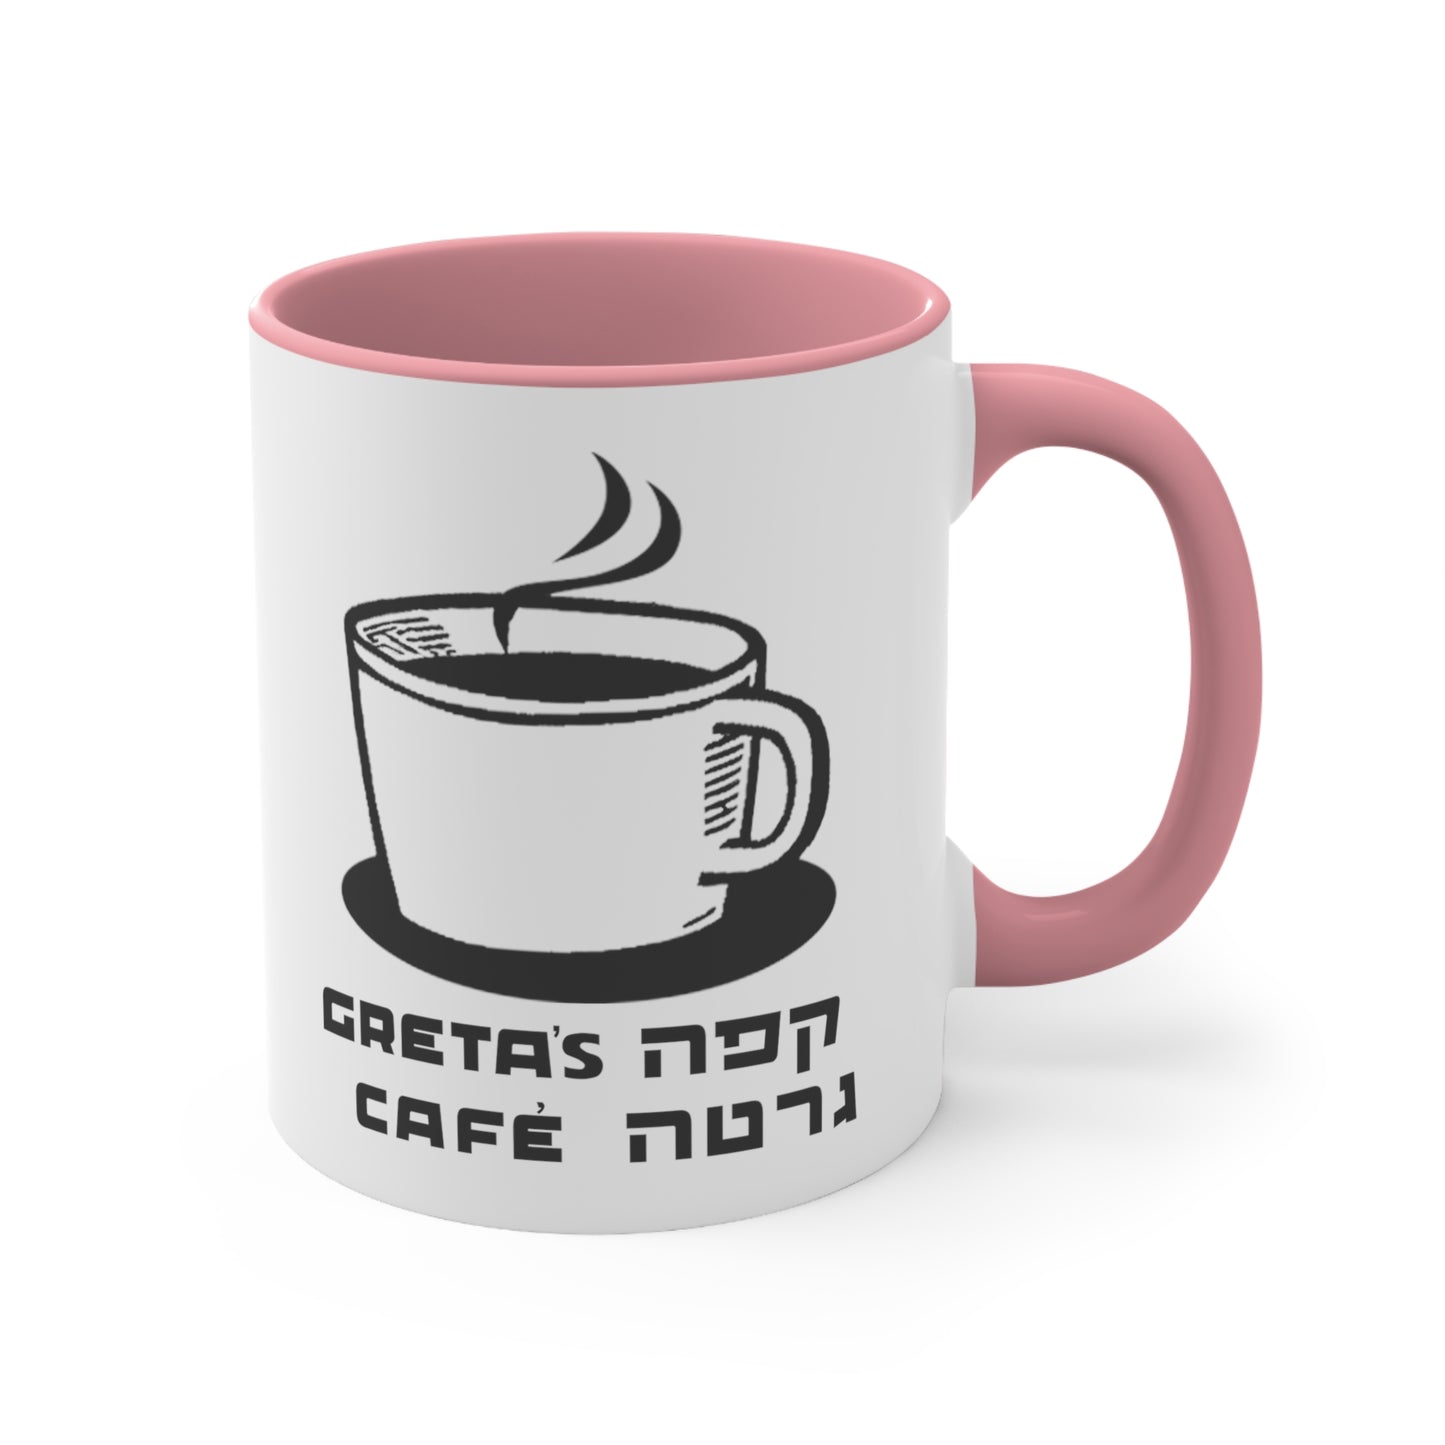 Greta's Cafe Accented Mug - pink